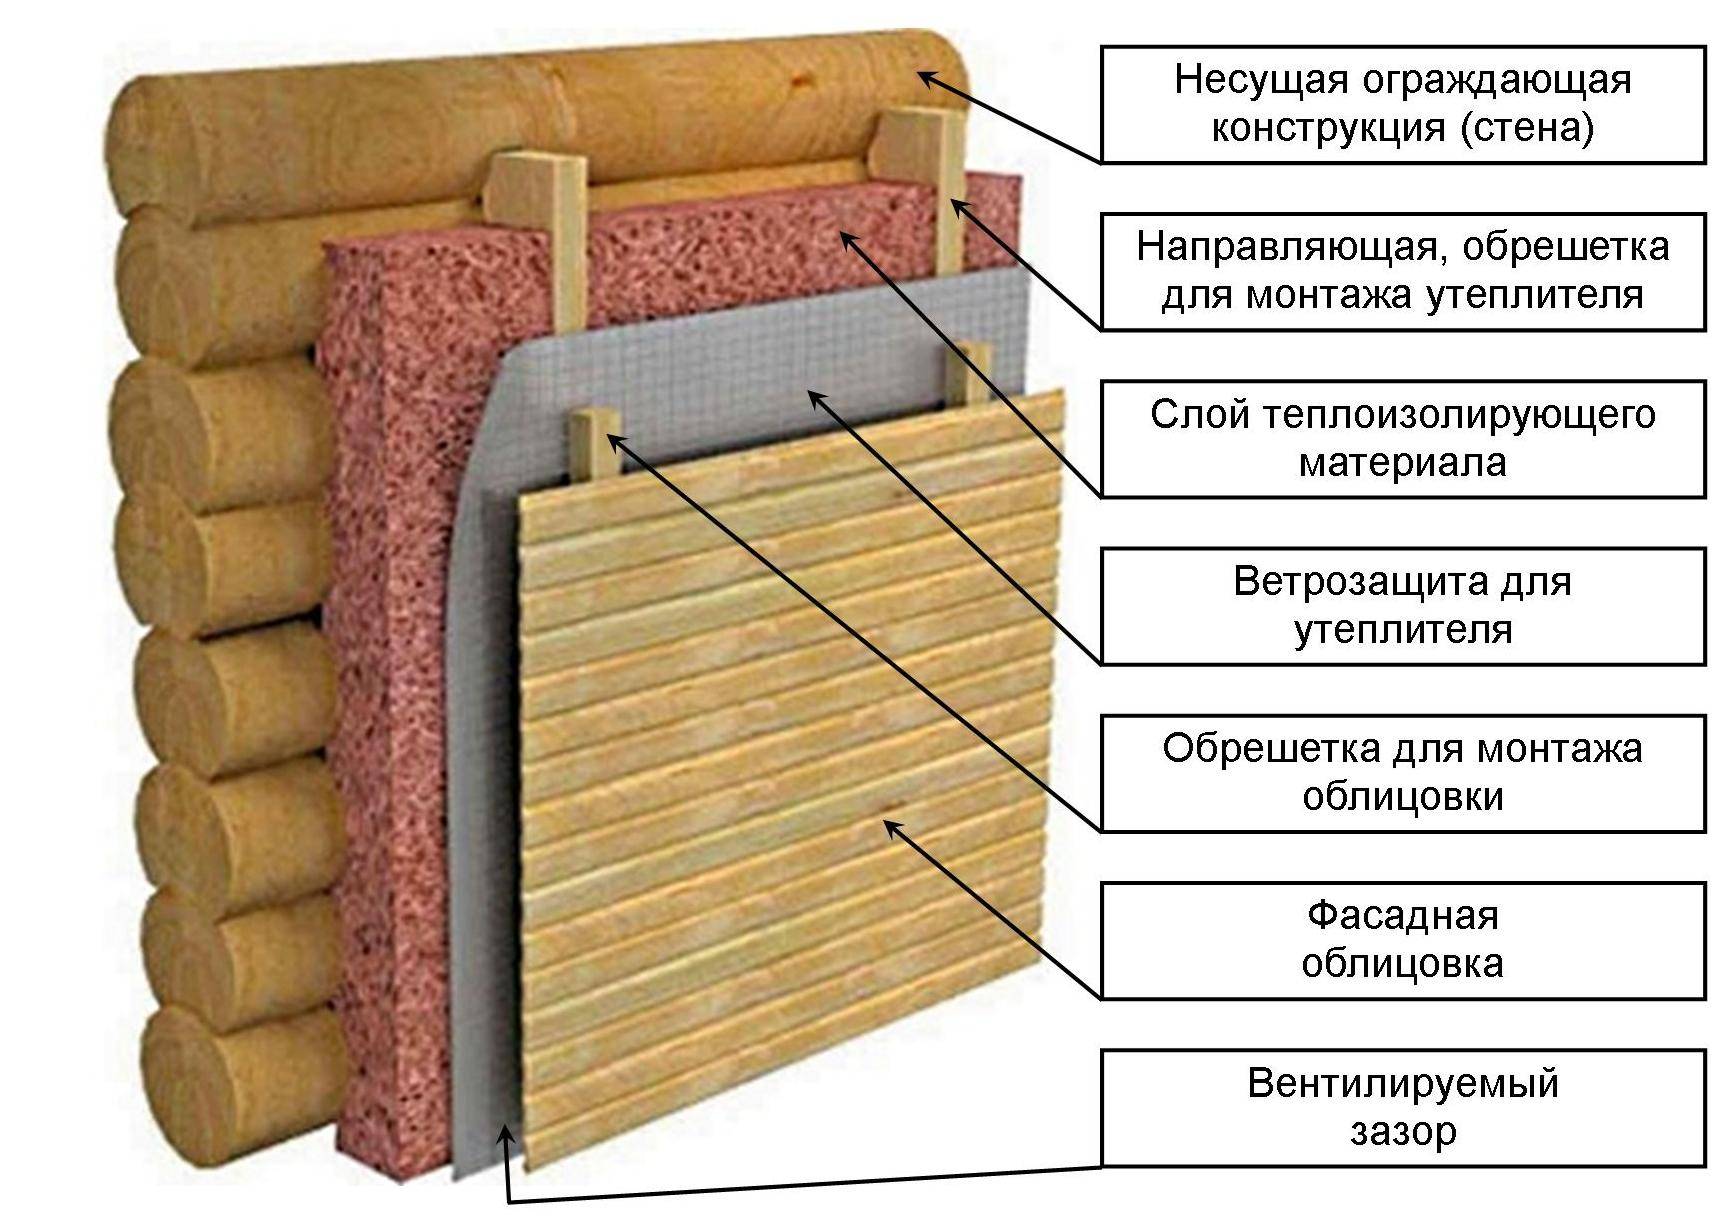 Утепление деревянного дома штукатуркой по минвате